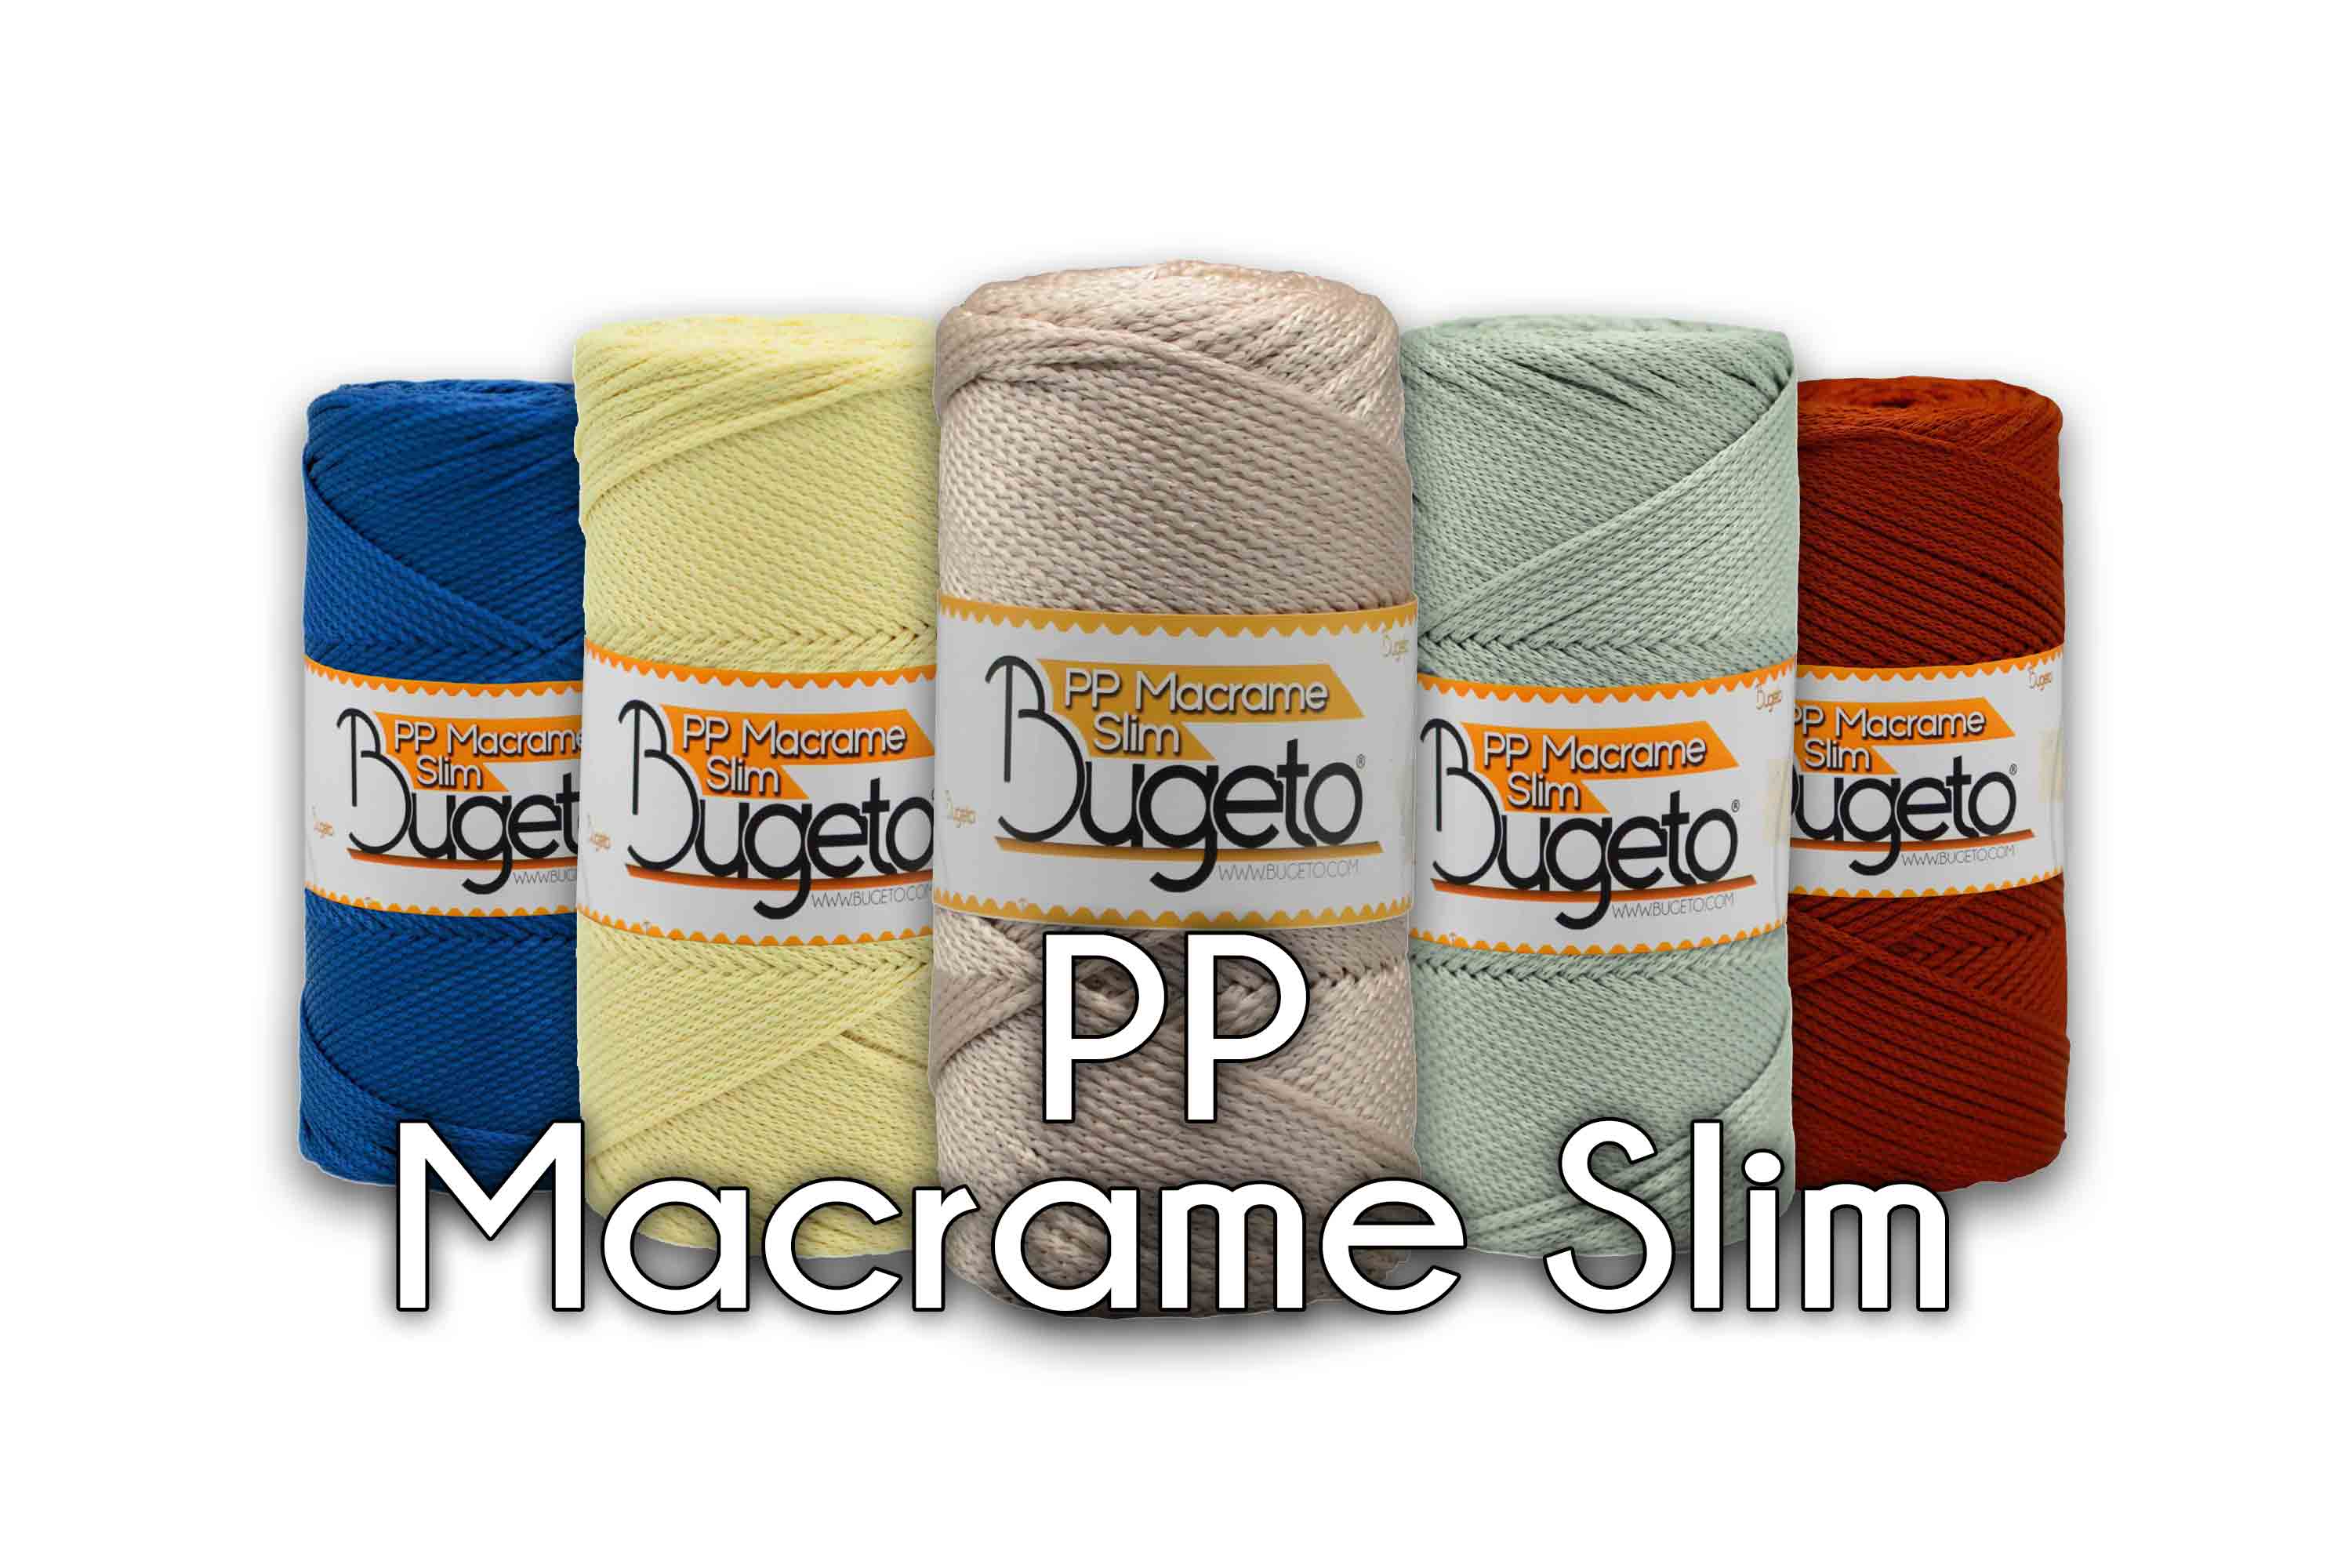 polyproplene yarns macrame yarn bugeto yarn